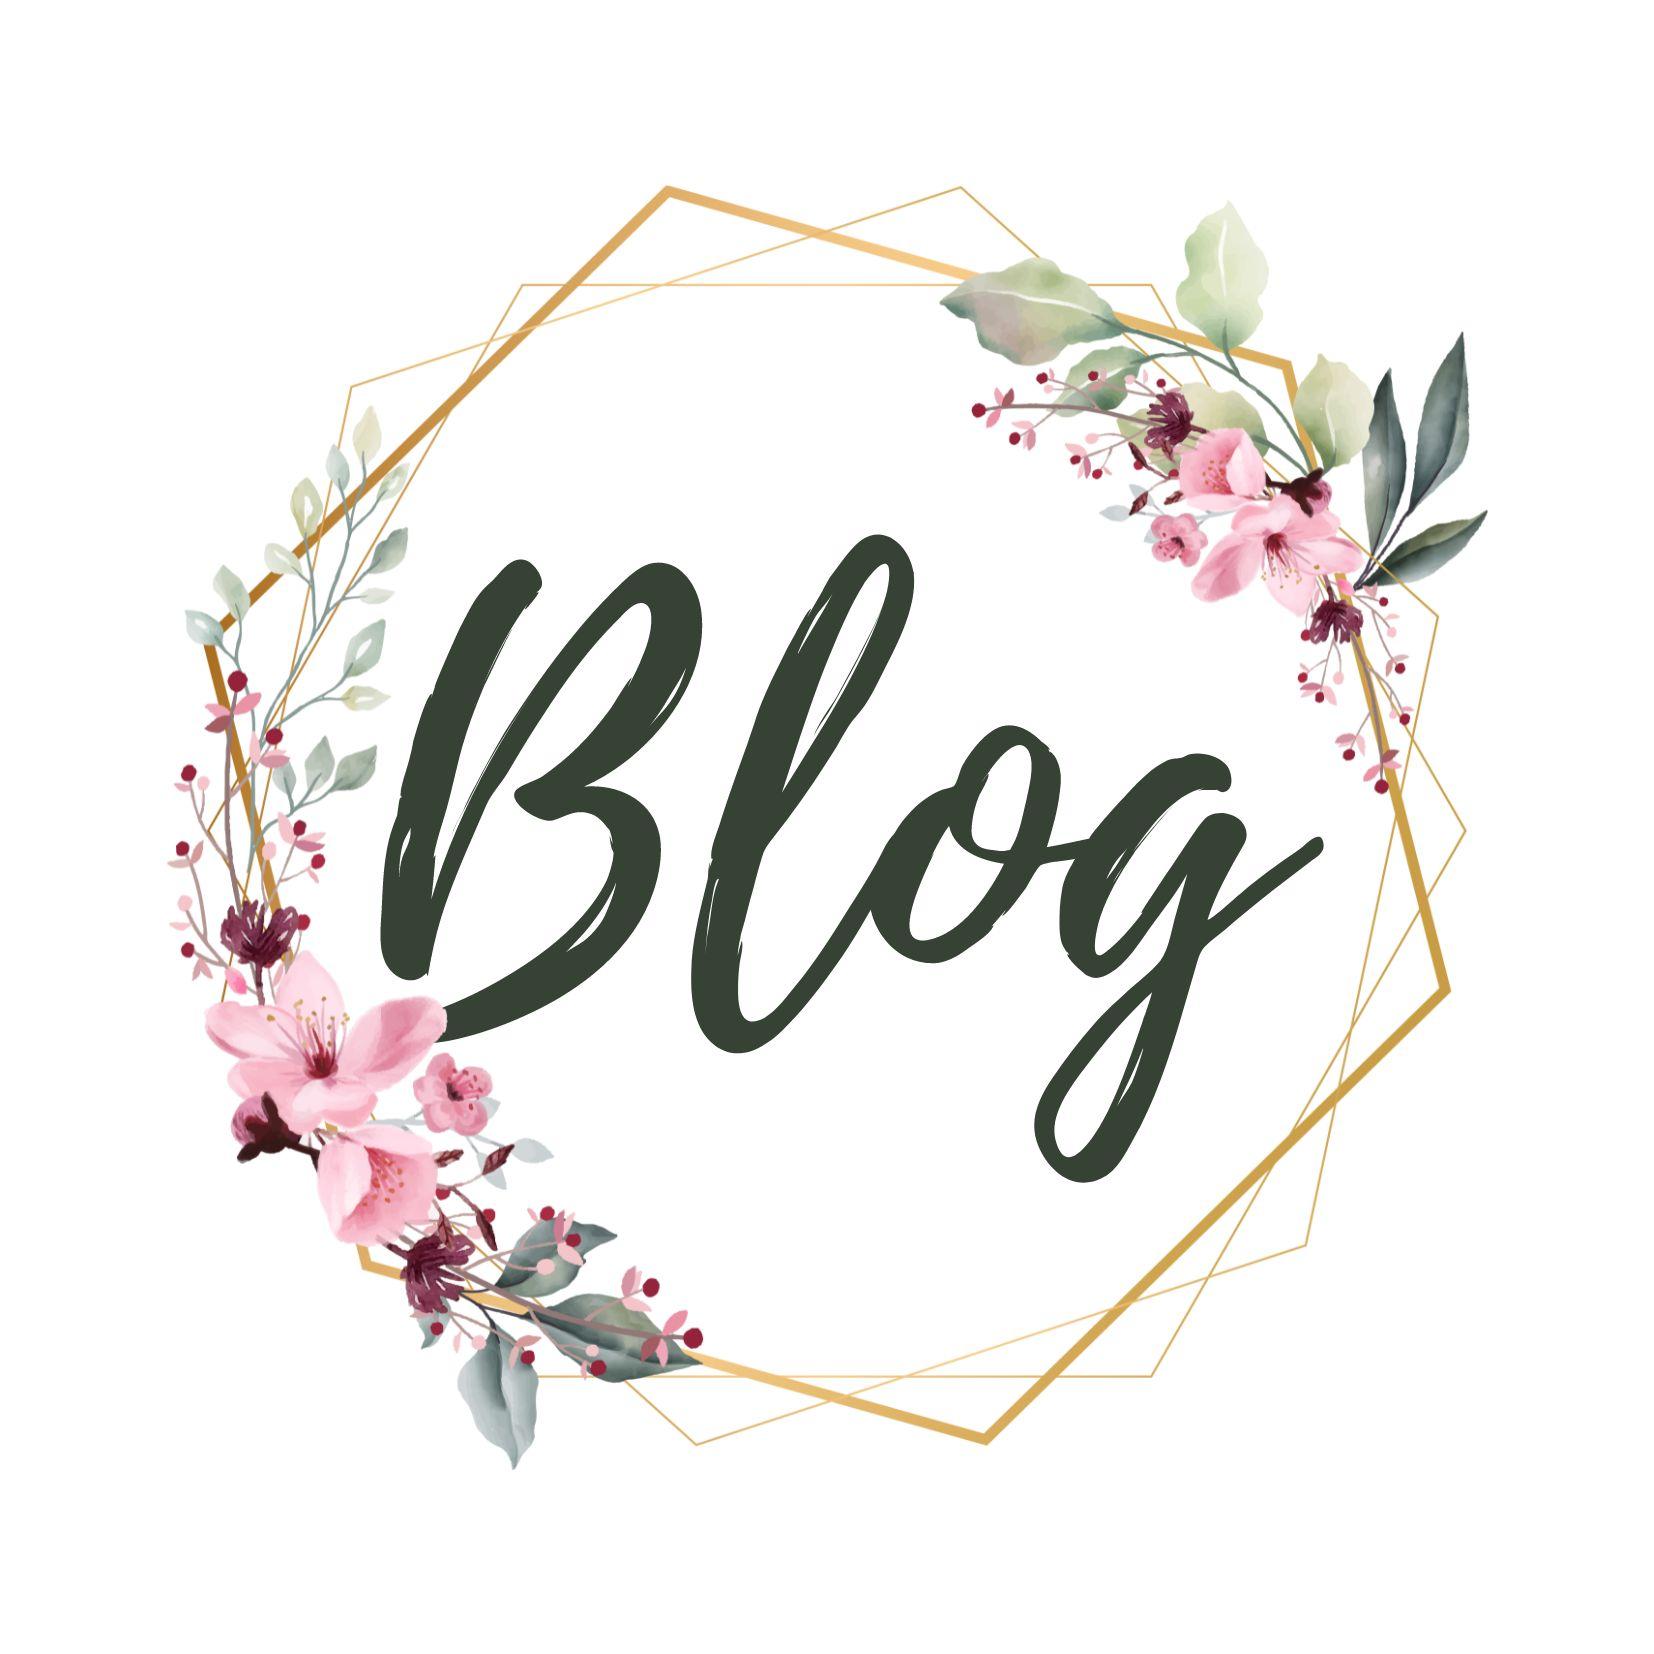 Mehr Spannende Themen in unserem BlumenBlog!